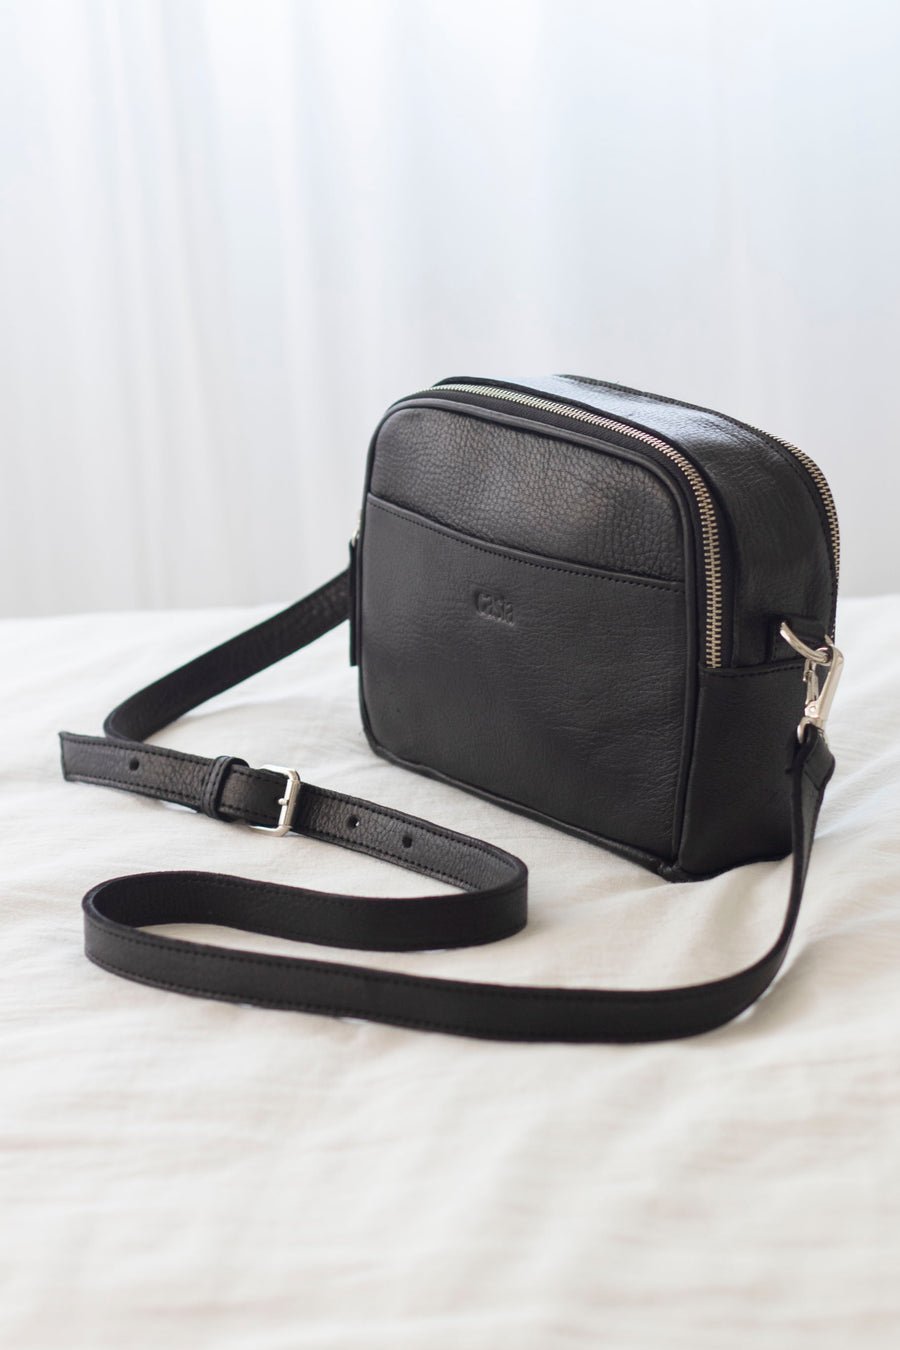 Leather bag. Shoulder bag. Full grain leather bag. Vegetable tanned leather purse. Crossbody bag.